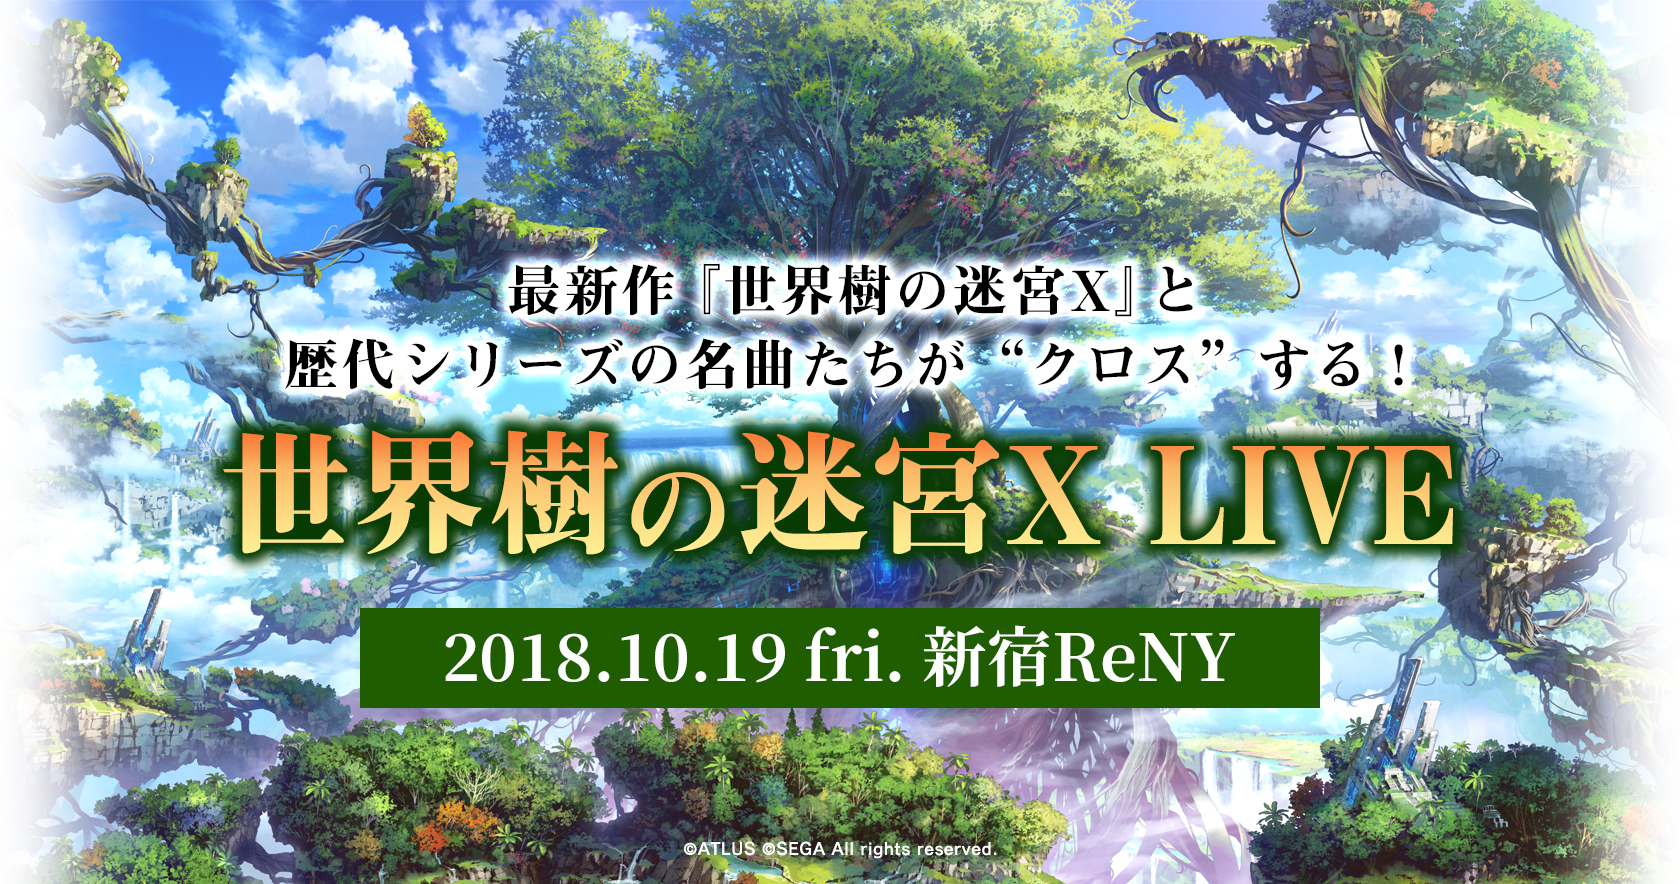 2018年10月19日(金)『世界樹の迷宮X LIVE』開催